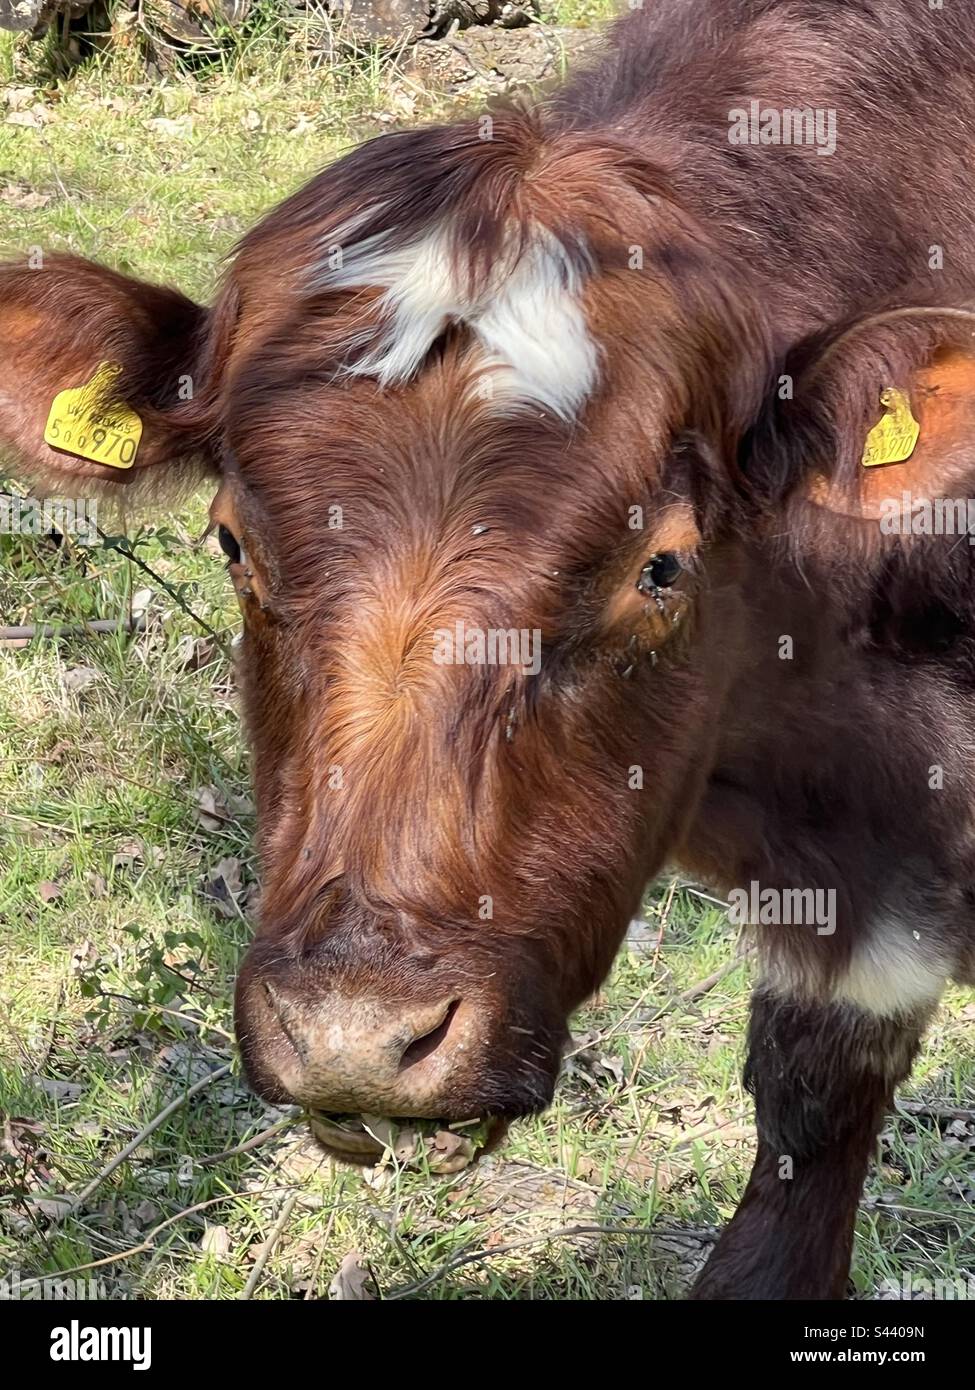 Vache brune à fourrure douce Banque D'Images